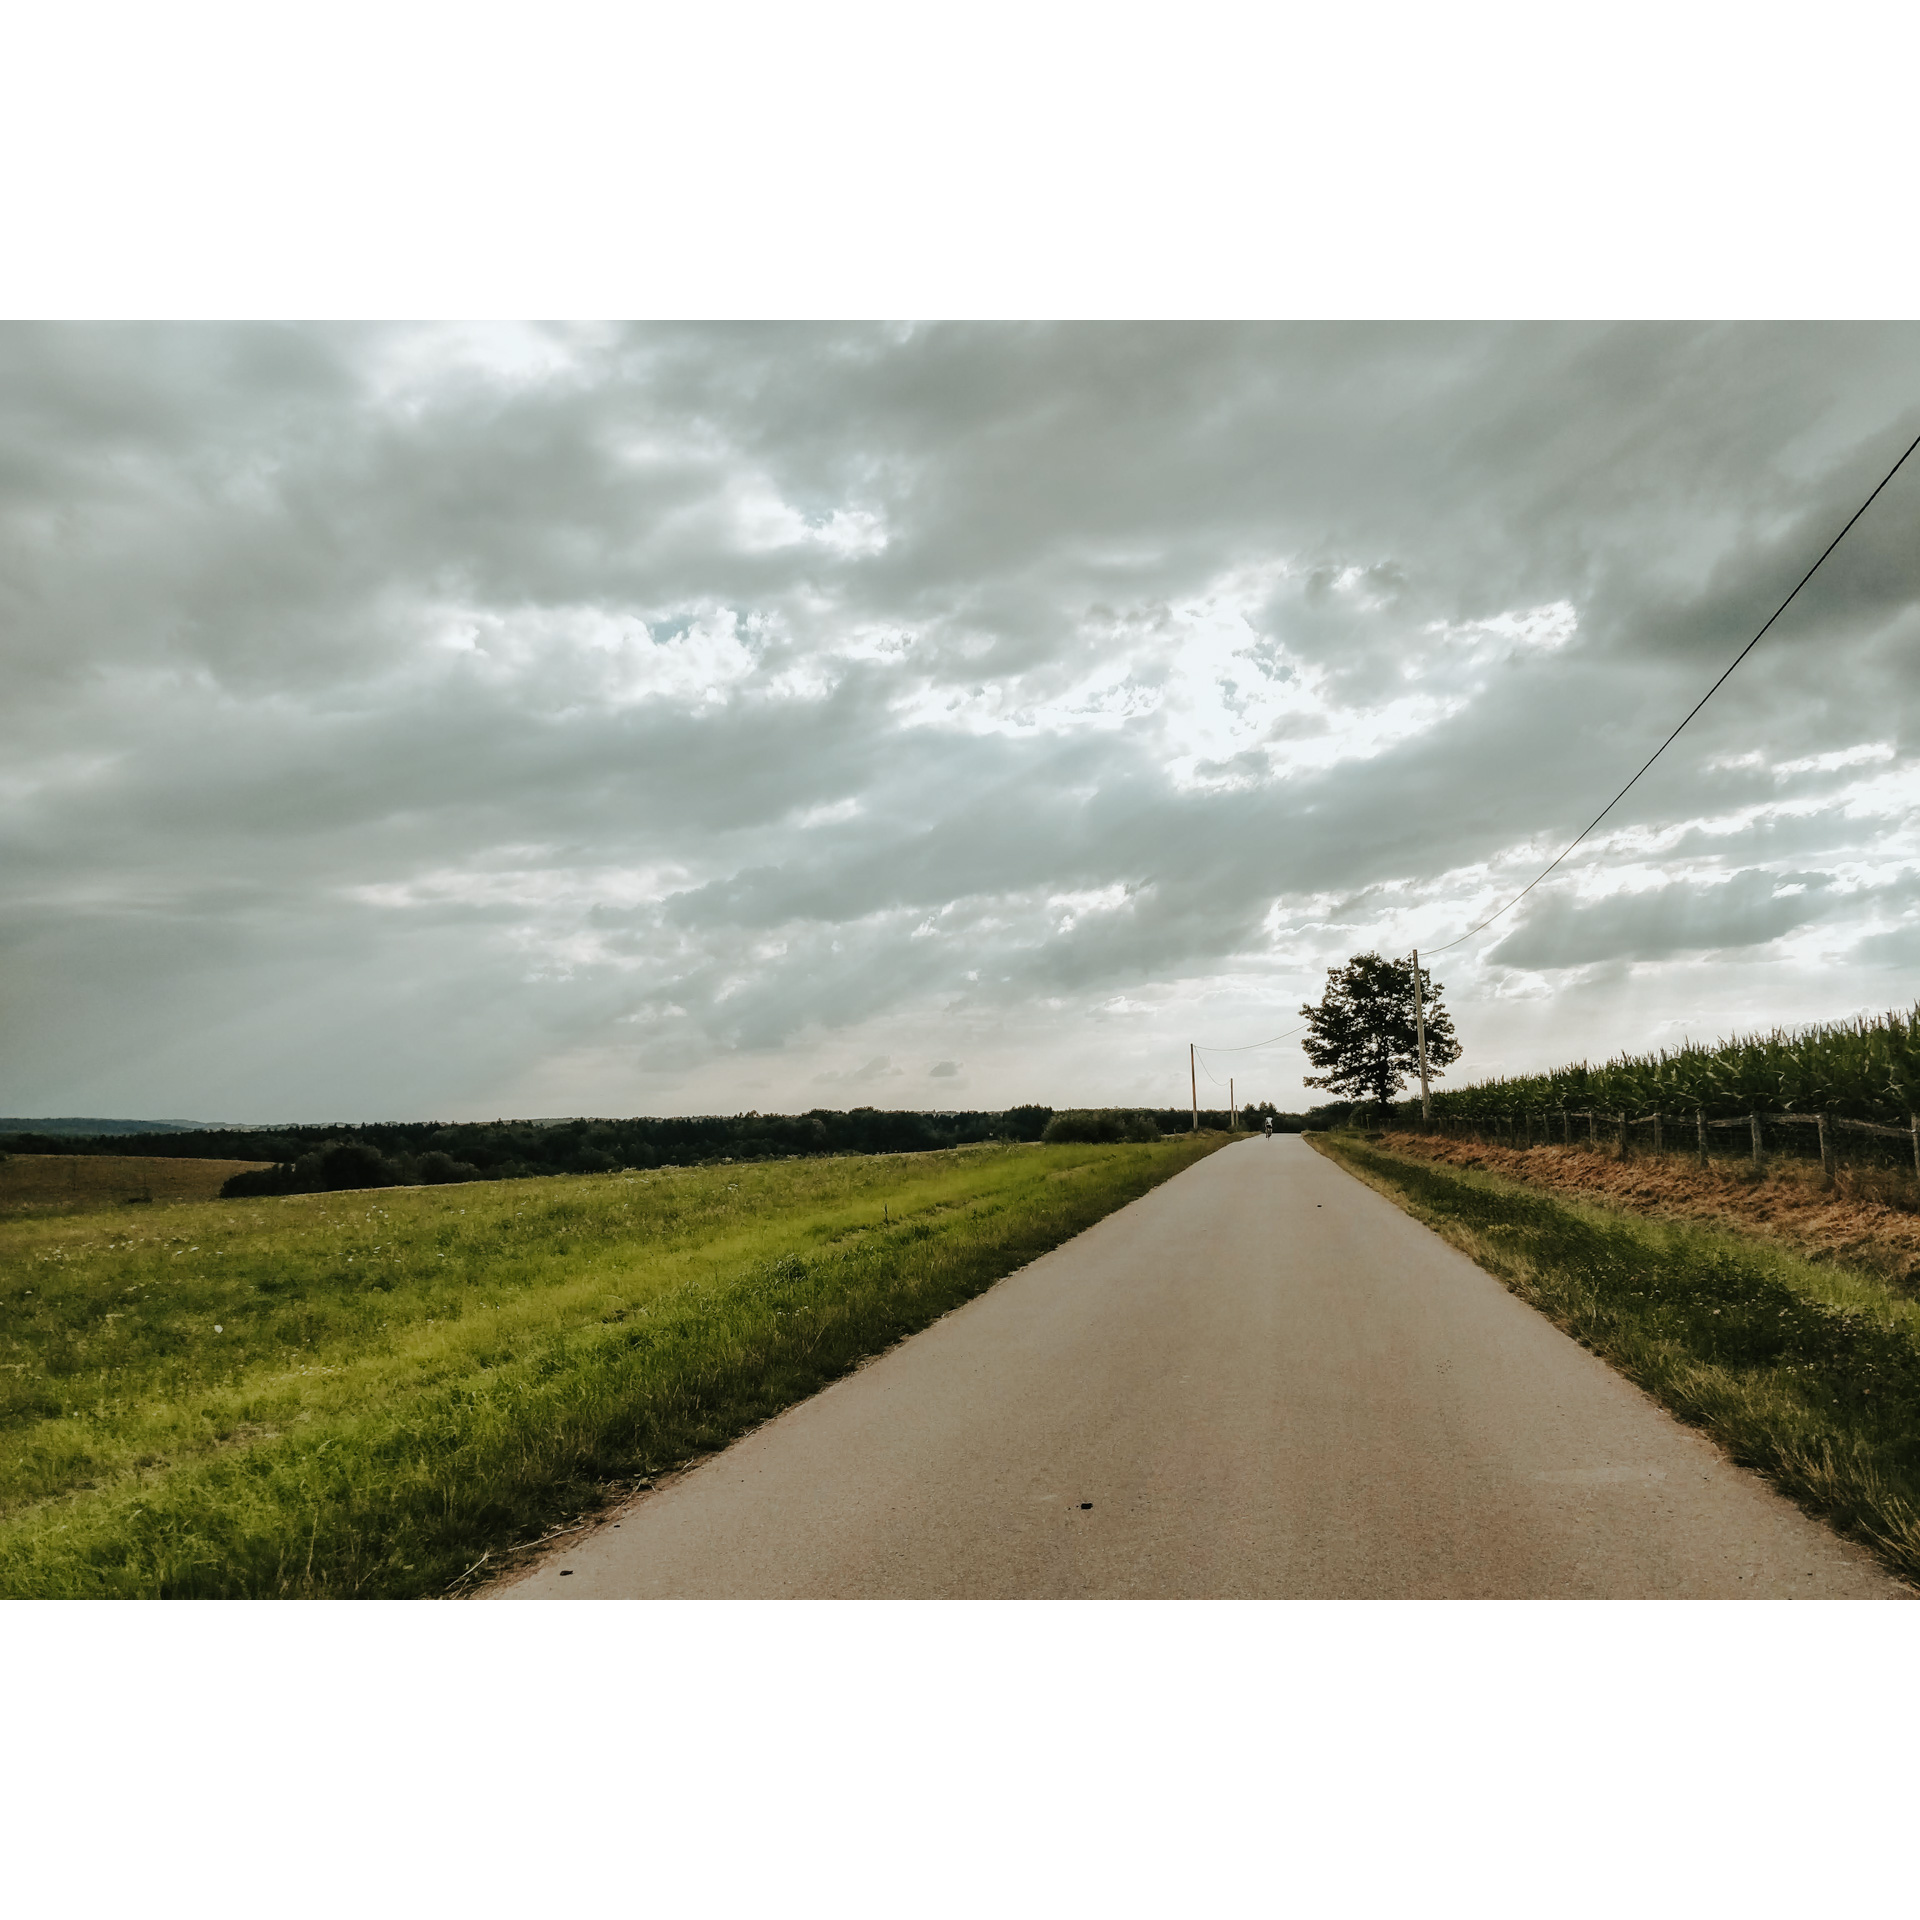 Droga asfaltowa prowadząca między zieloną łąką a polem kukurydzy oraz jadący nią w oddali rowerzysta w białym stroju 